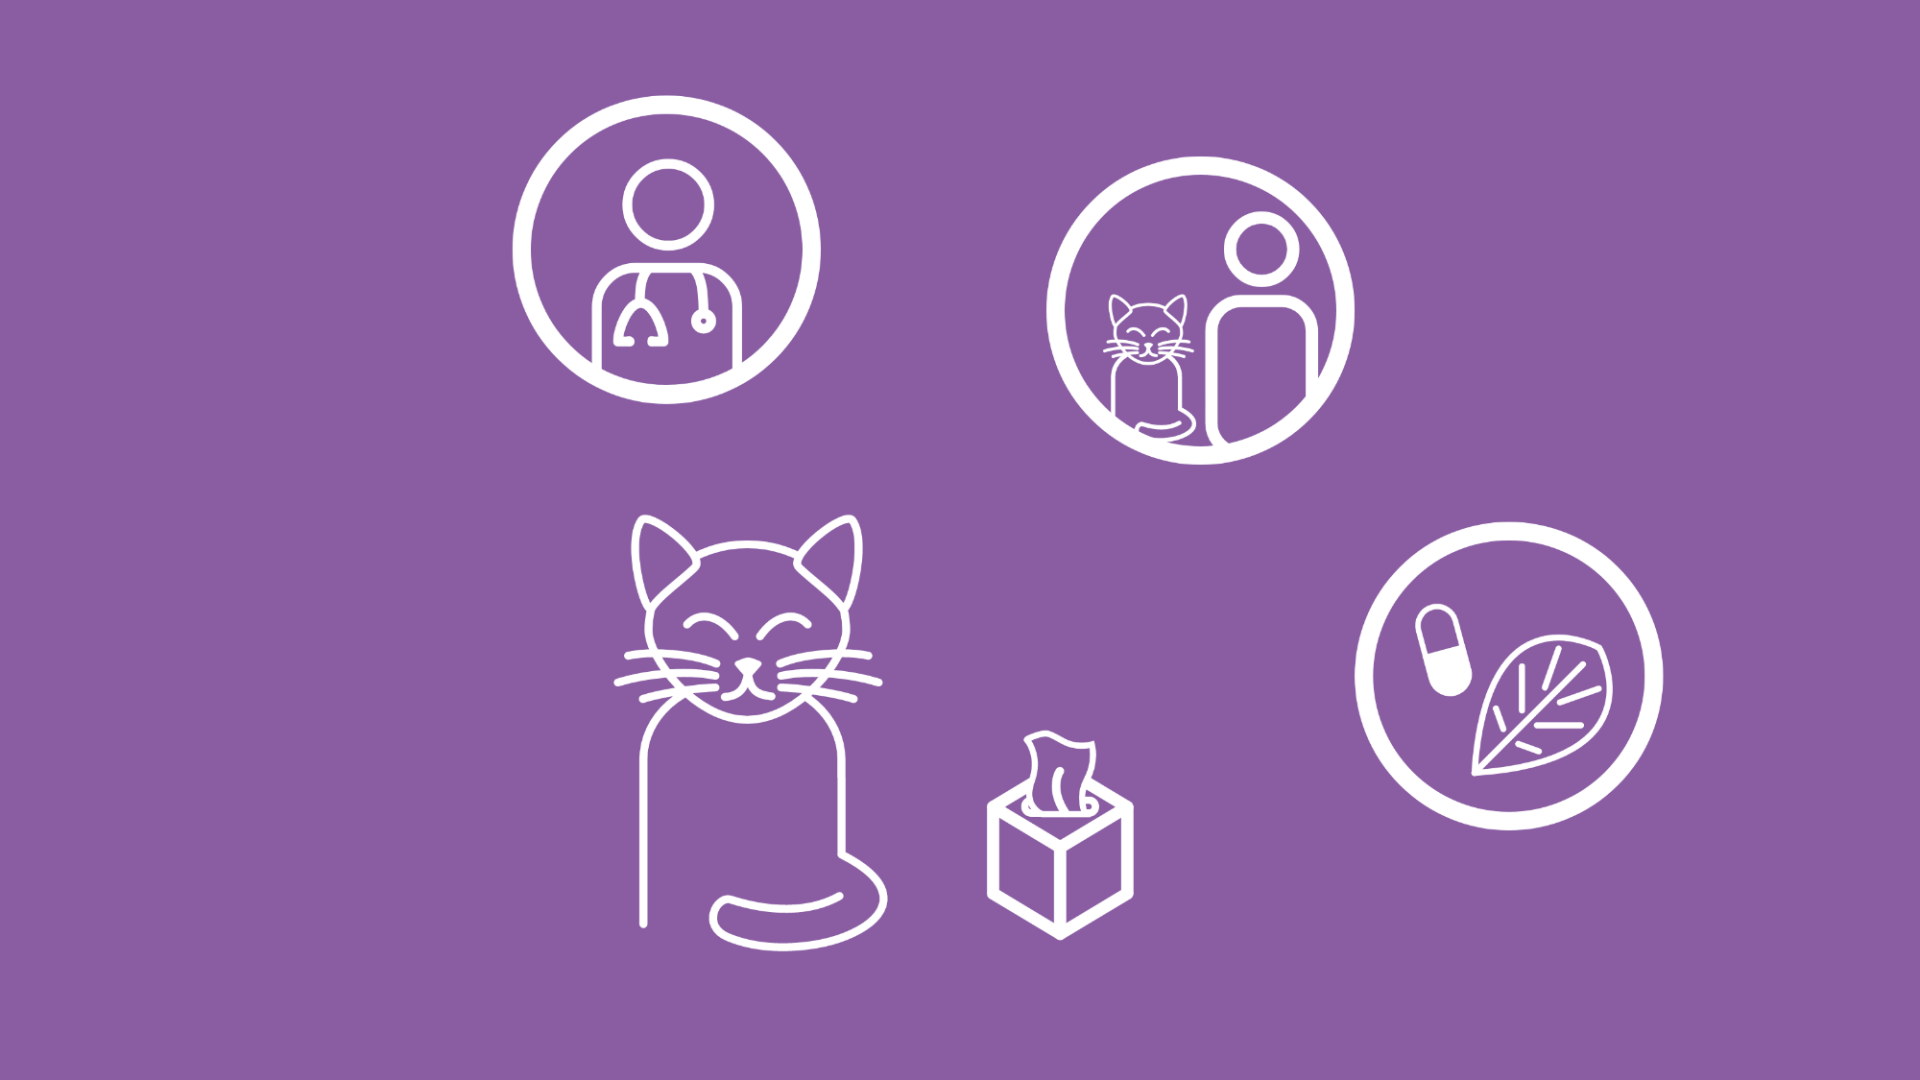 Eine Katze wird zusammen mit 3 Icons abgebildet, die die verschiedenen Behandlungsmöglichkeiten darstellen. 